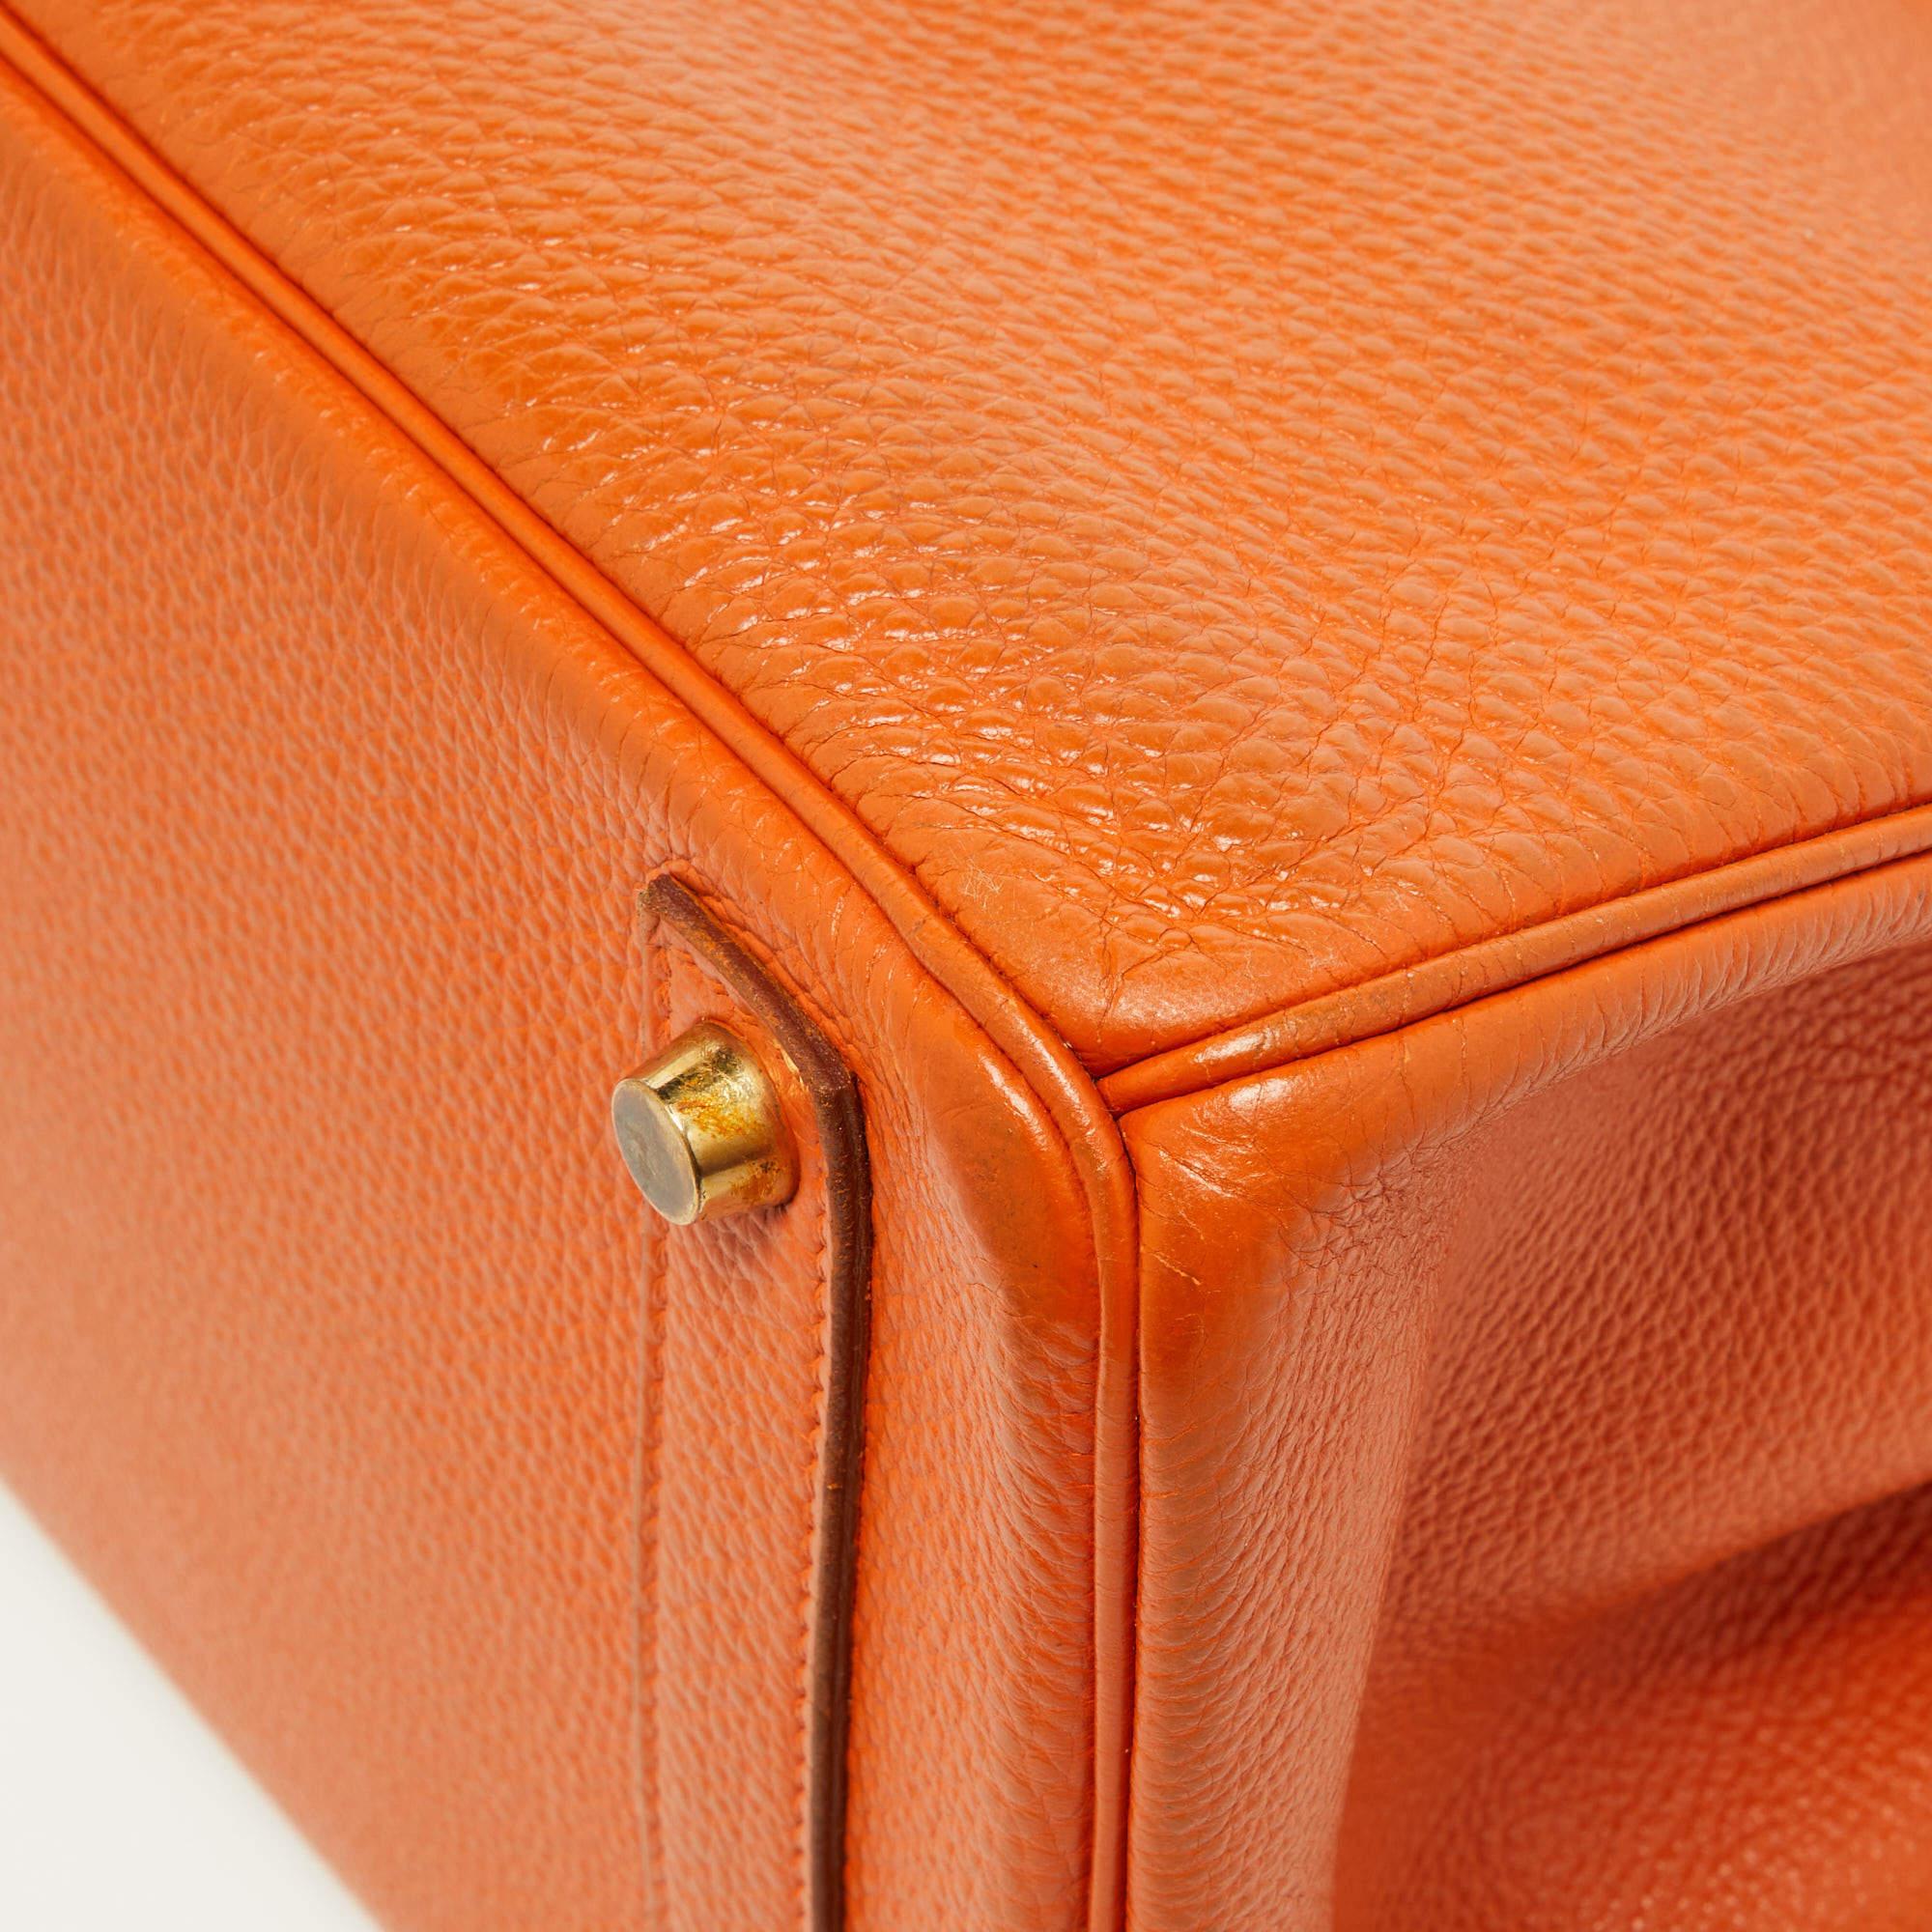 Hermes Orange Togo Leather Gold Hardware HAC Birkin 32 Bag For Sale 15